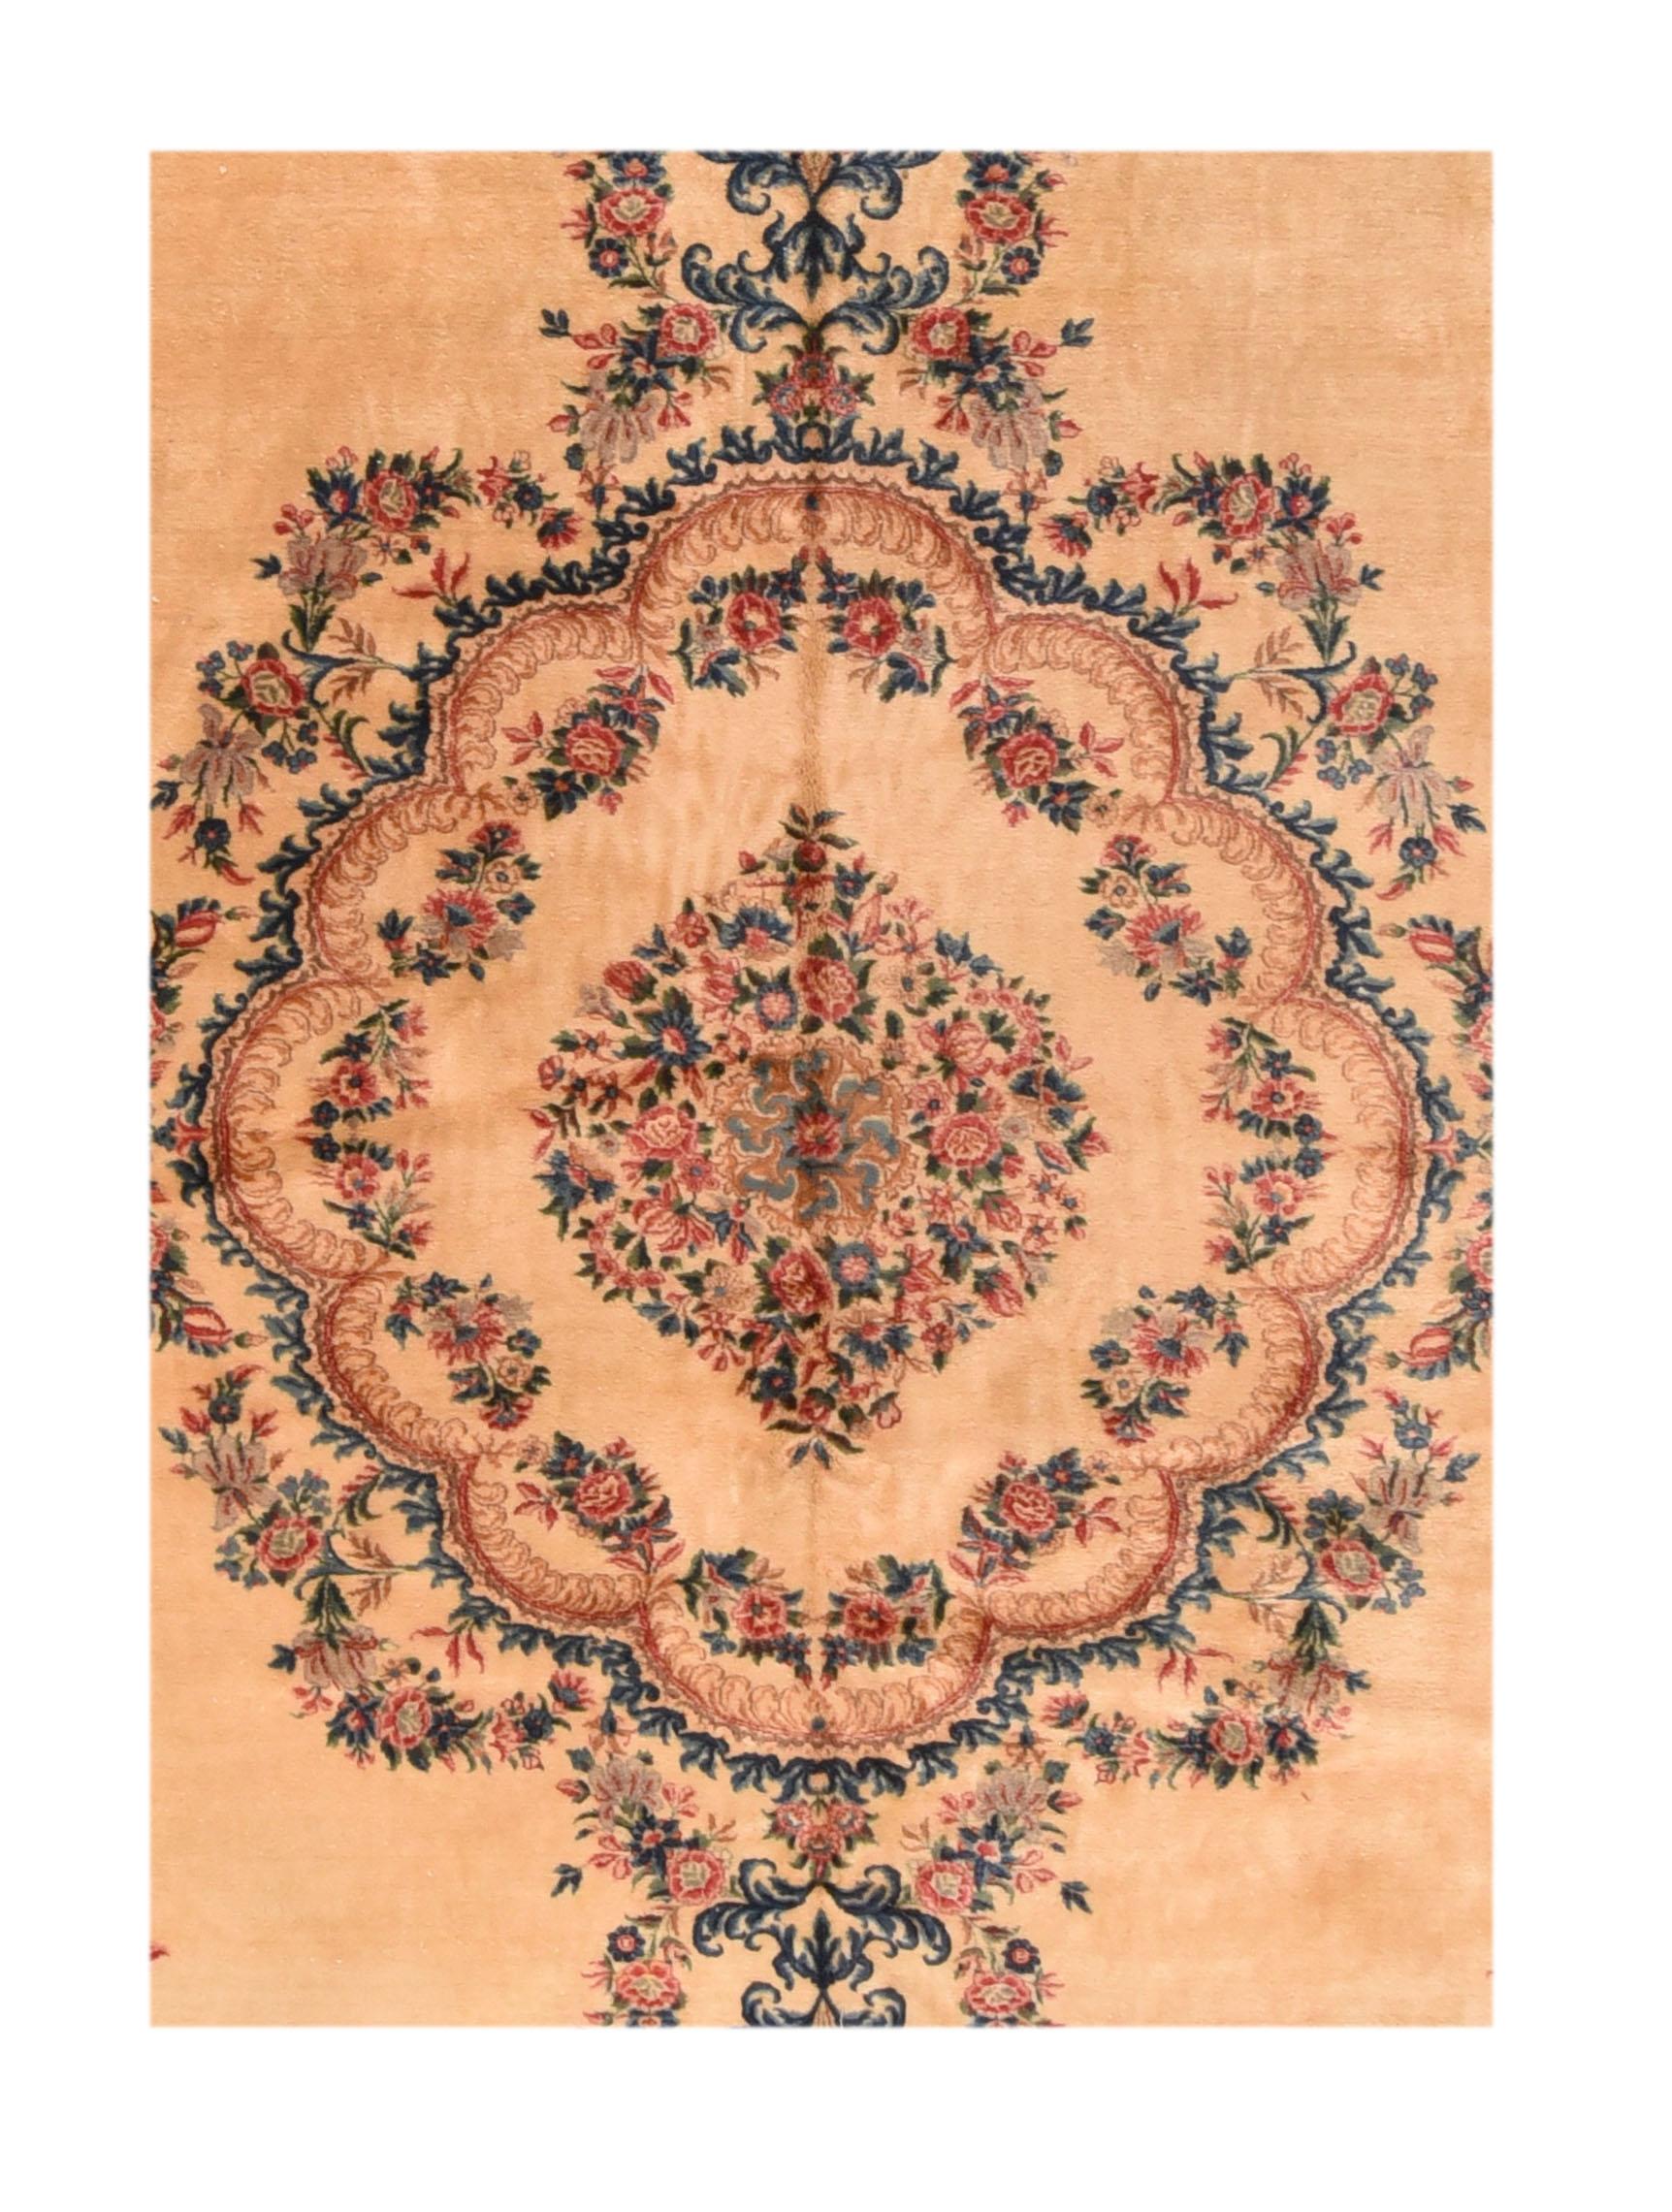  Kerman carpets (sometimes 